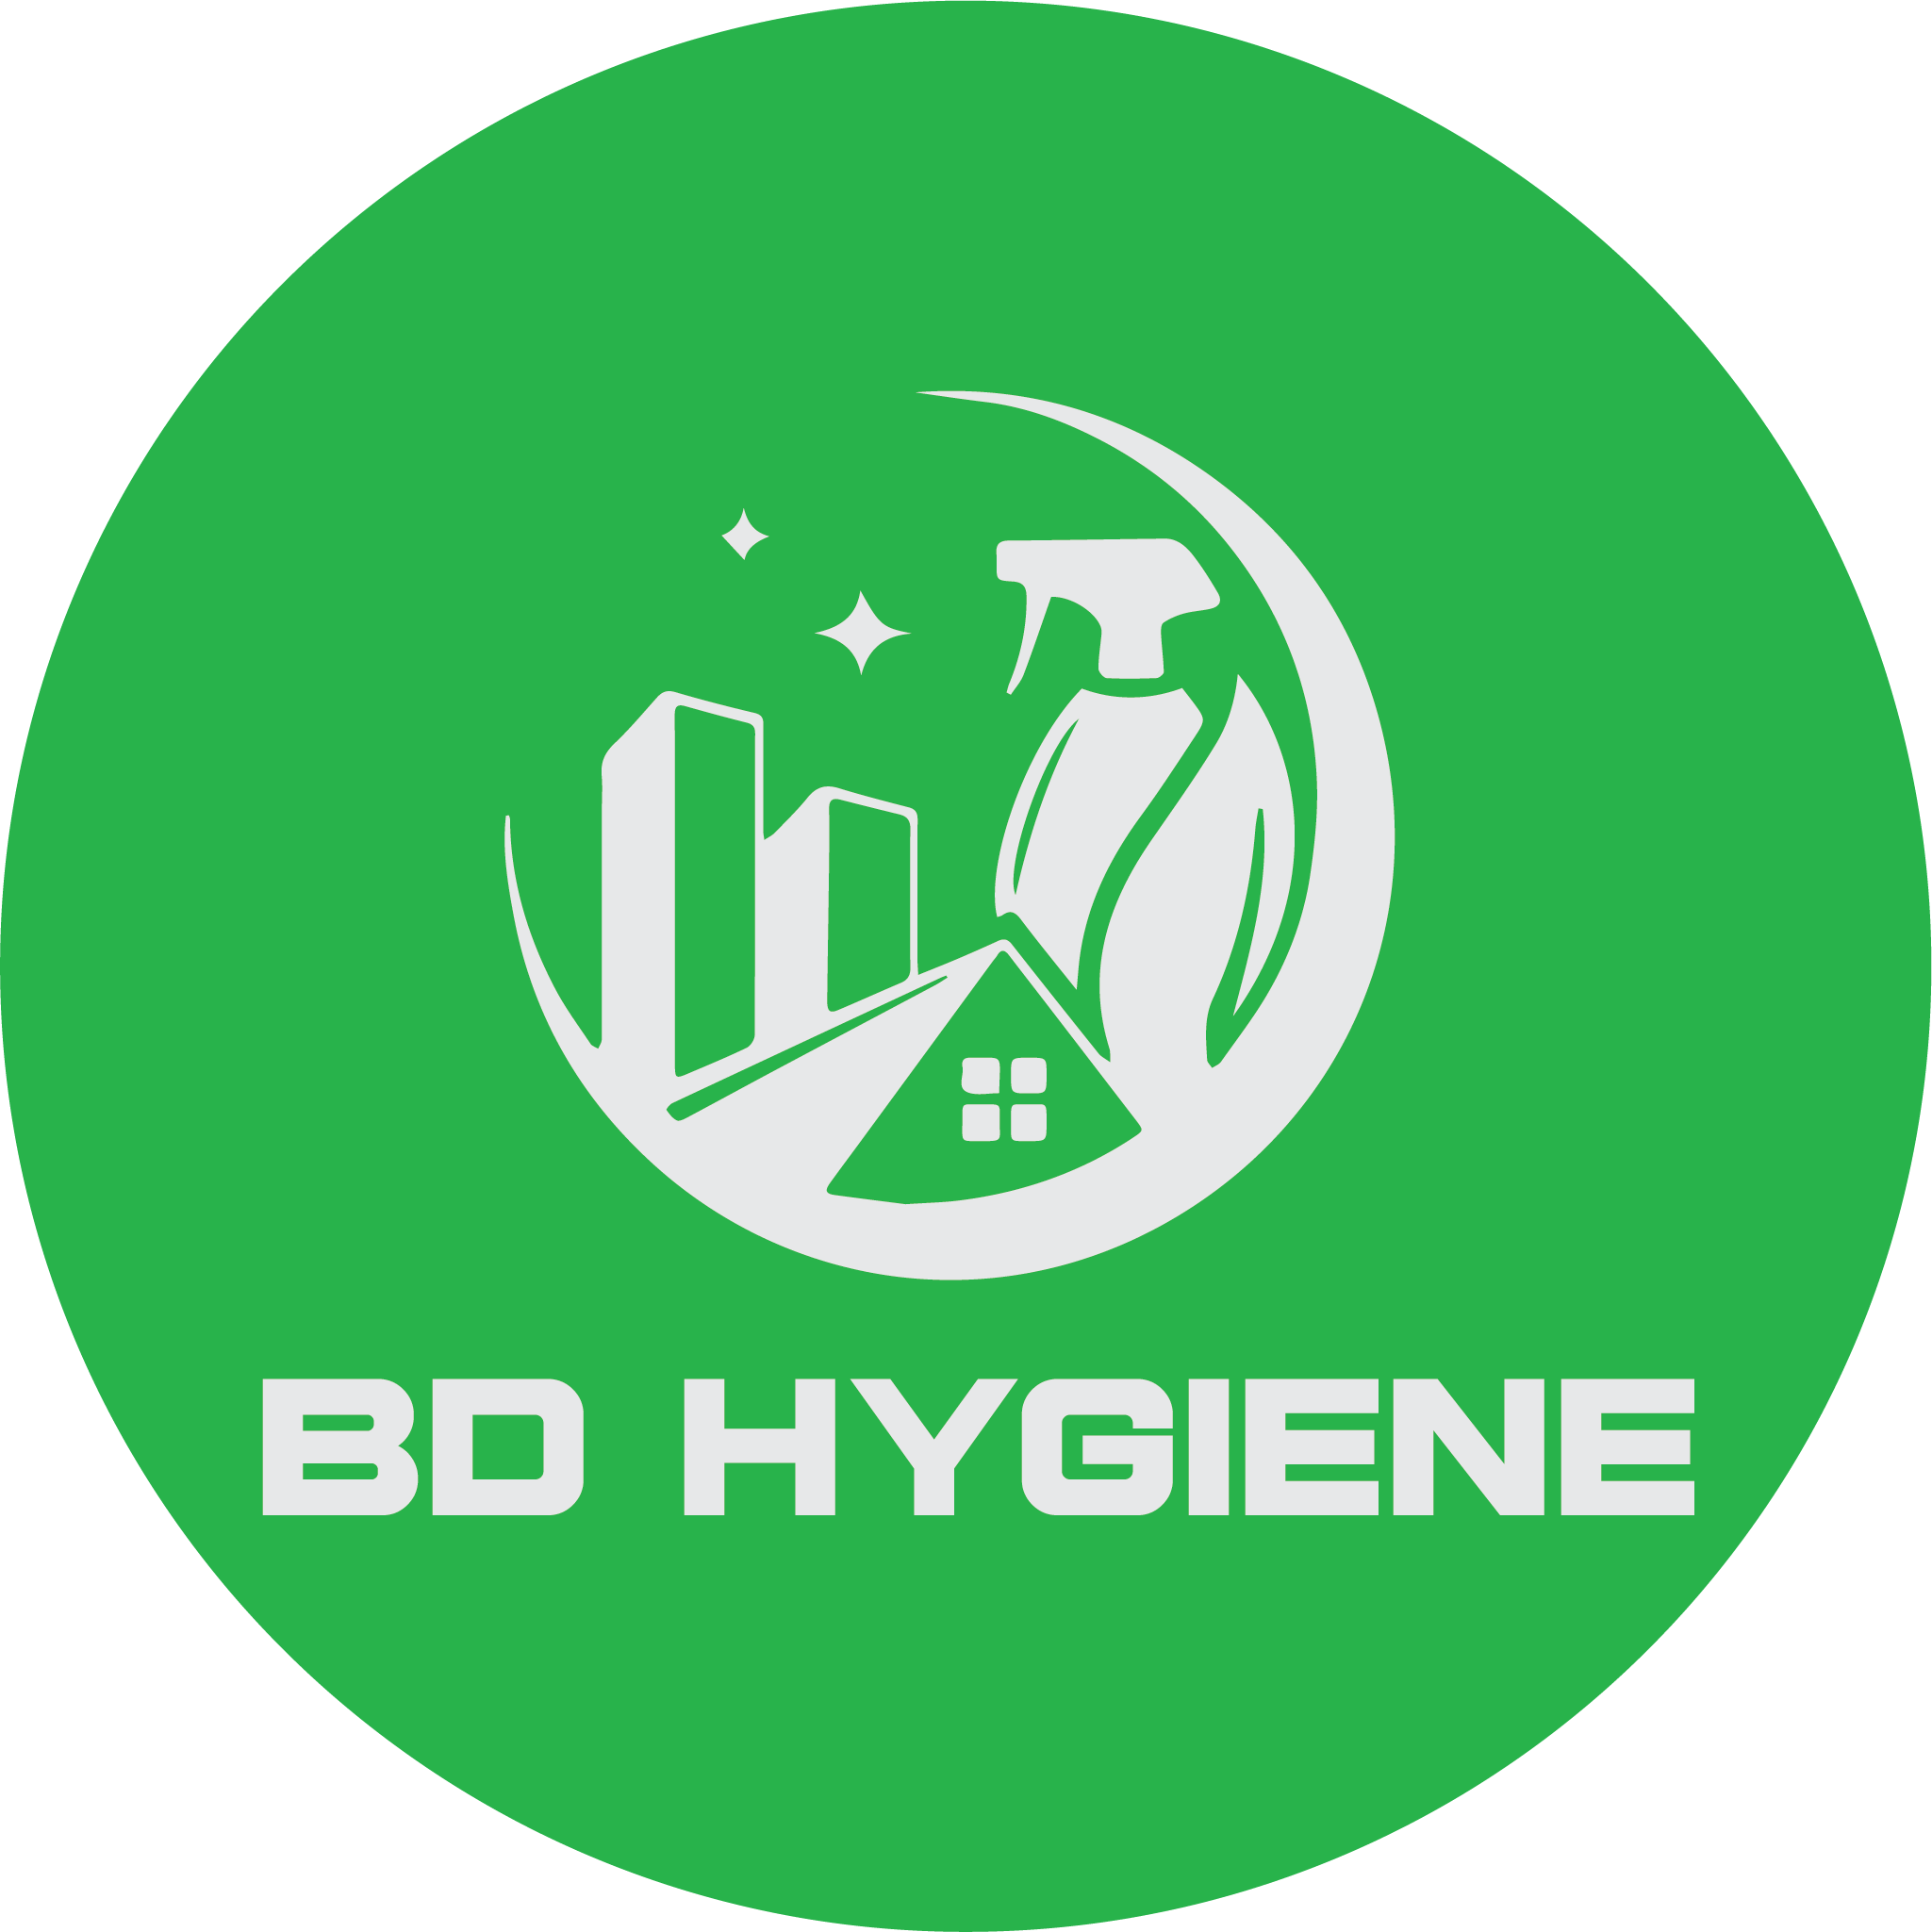 BD Hygiene